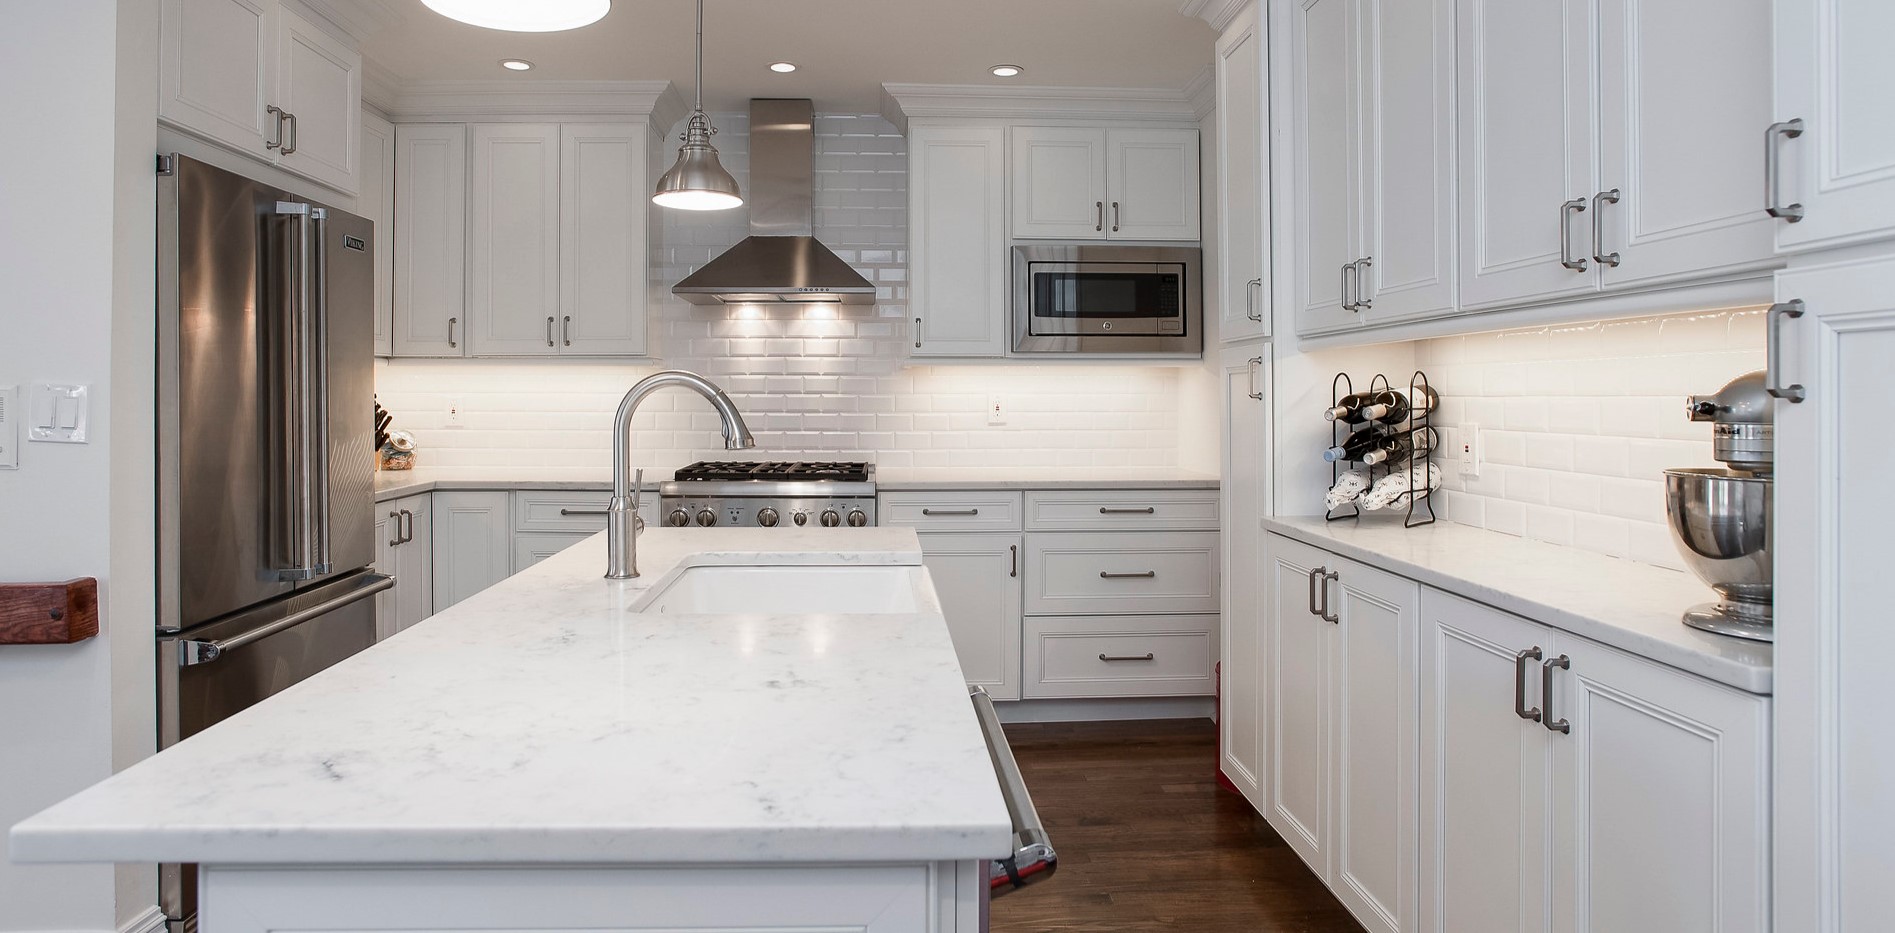 Рабочую зону на кухне можно выложить белой плиткой в виде кирпича